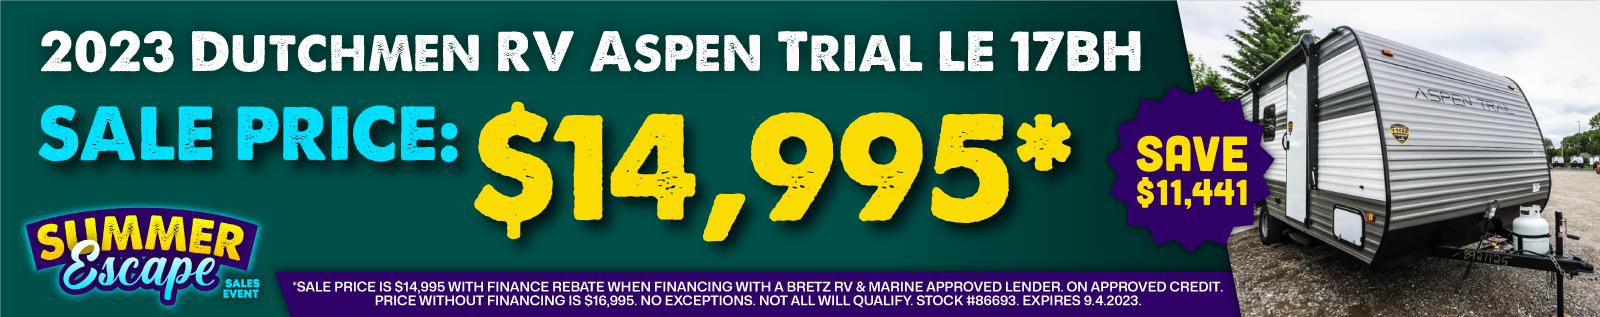 2023 Dutchmen RV Aspen Trail LE 17BH | $14,995